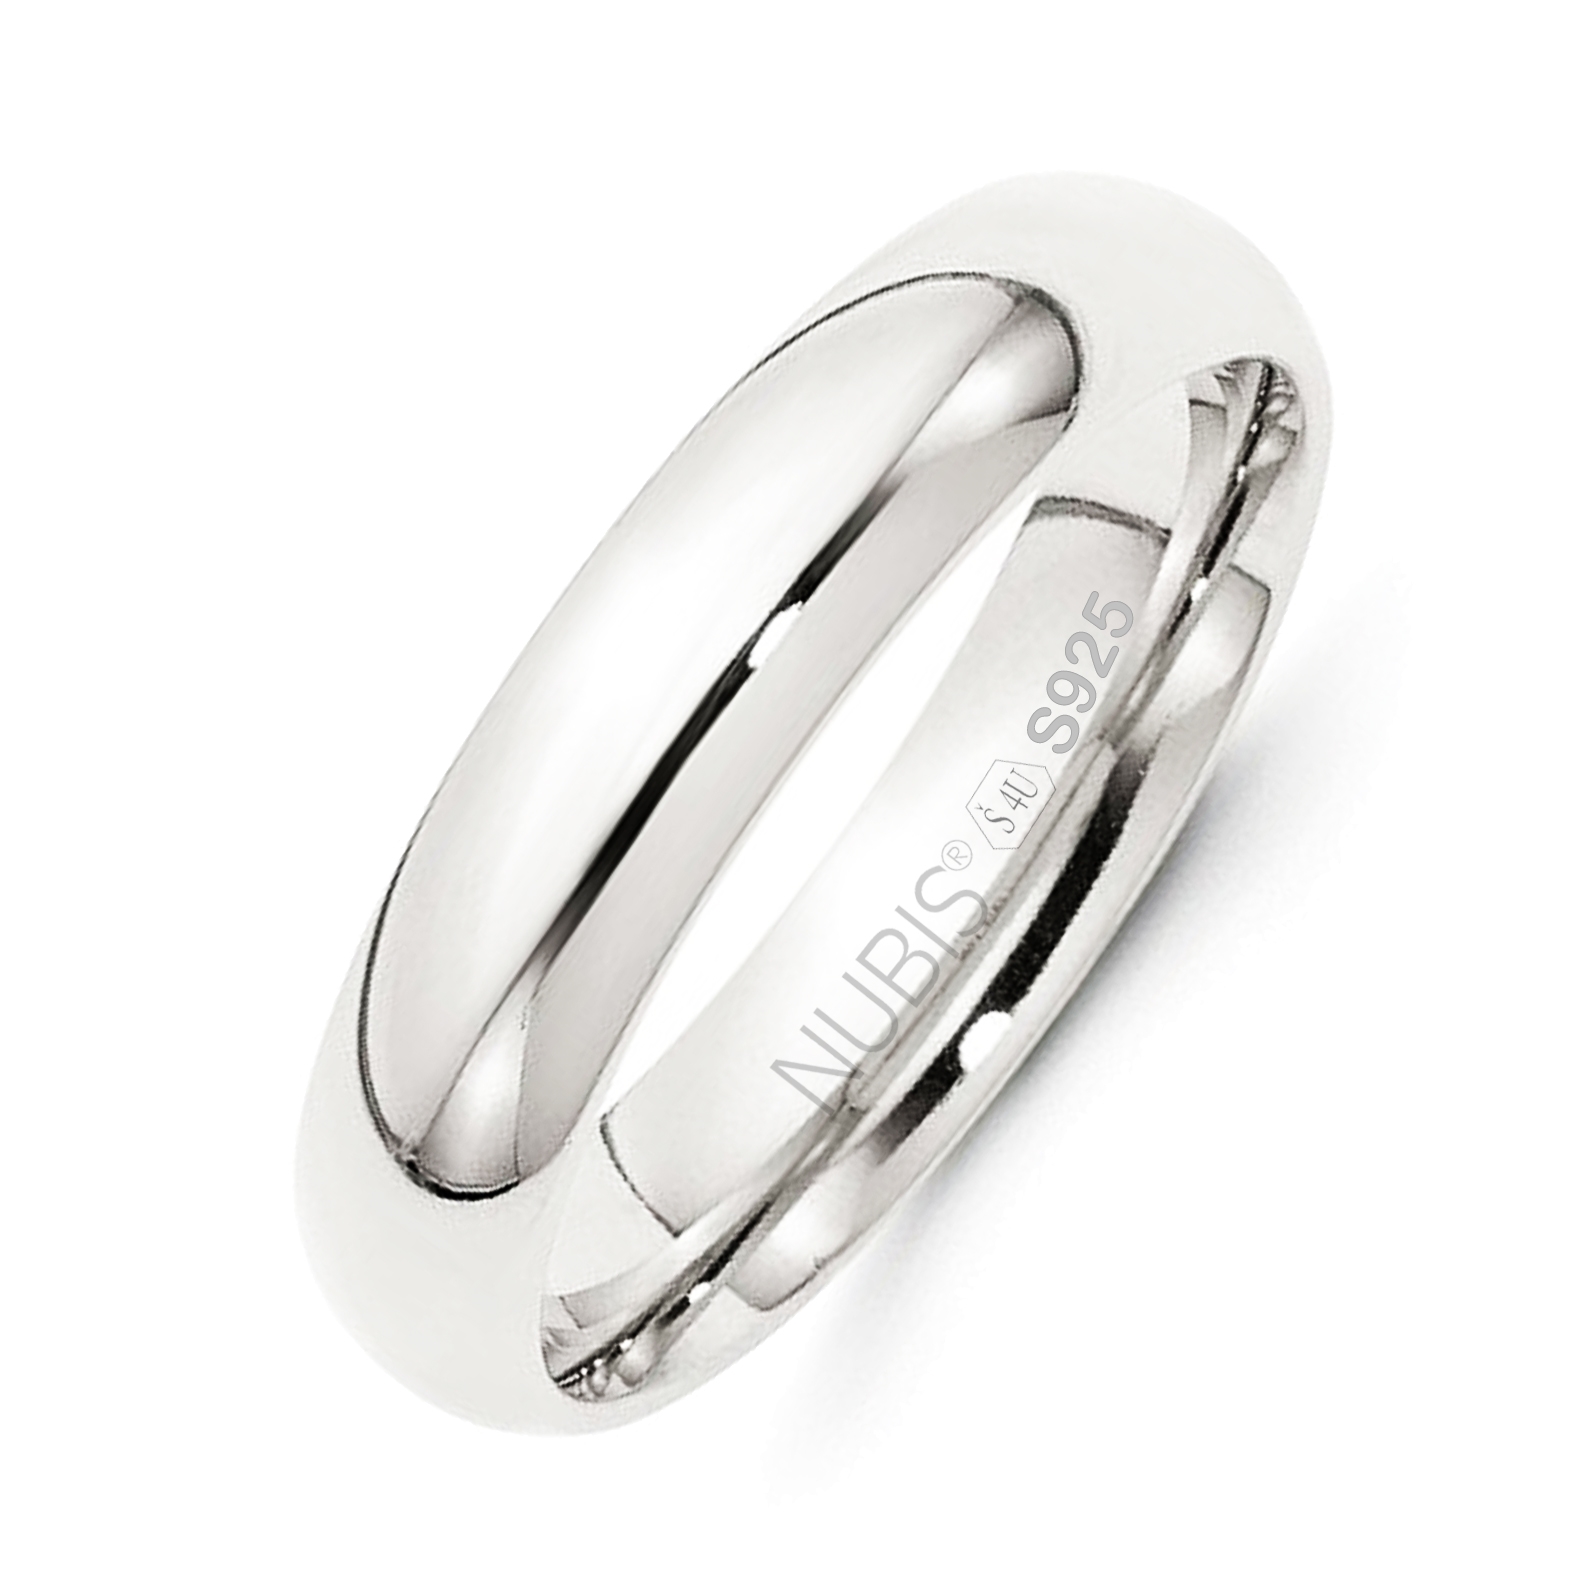 NUBIS® NB101-5 Stříbrný snubní prsten šíře 5 mm - velikost 50 - NB101-5-50